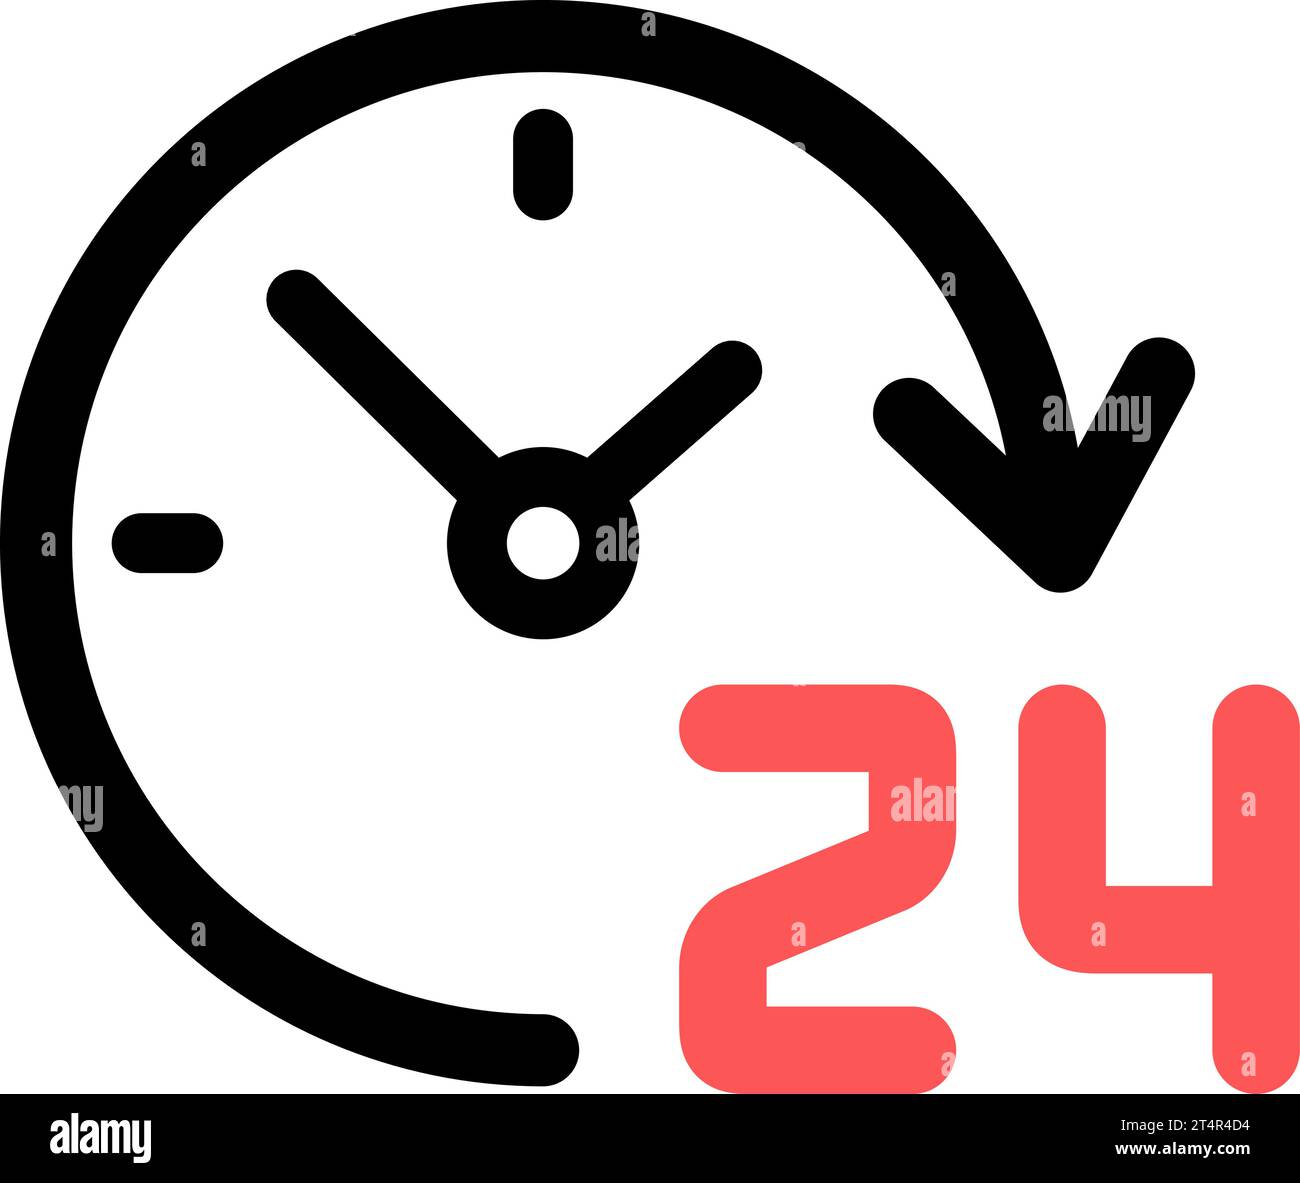 Icona lineare di 24 ore al giorno come simbolo del servizio disponibile 24 ore su 24 Illustrazione Vettoriale